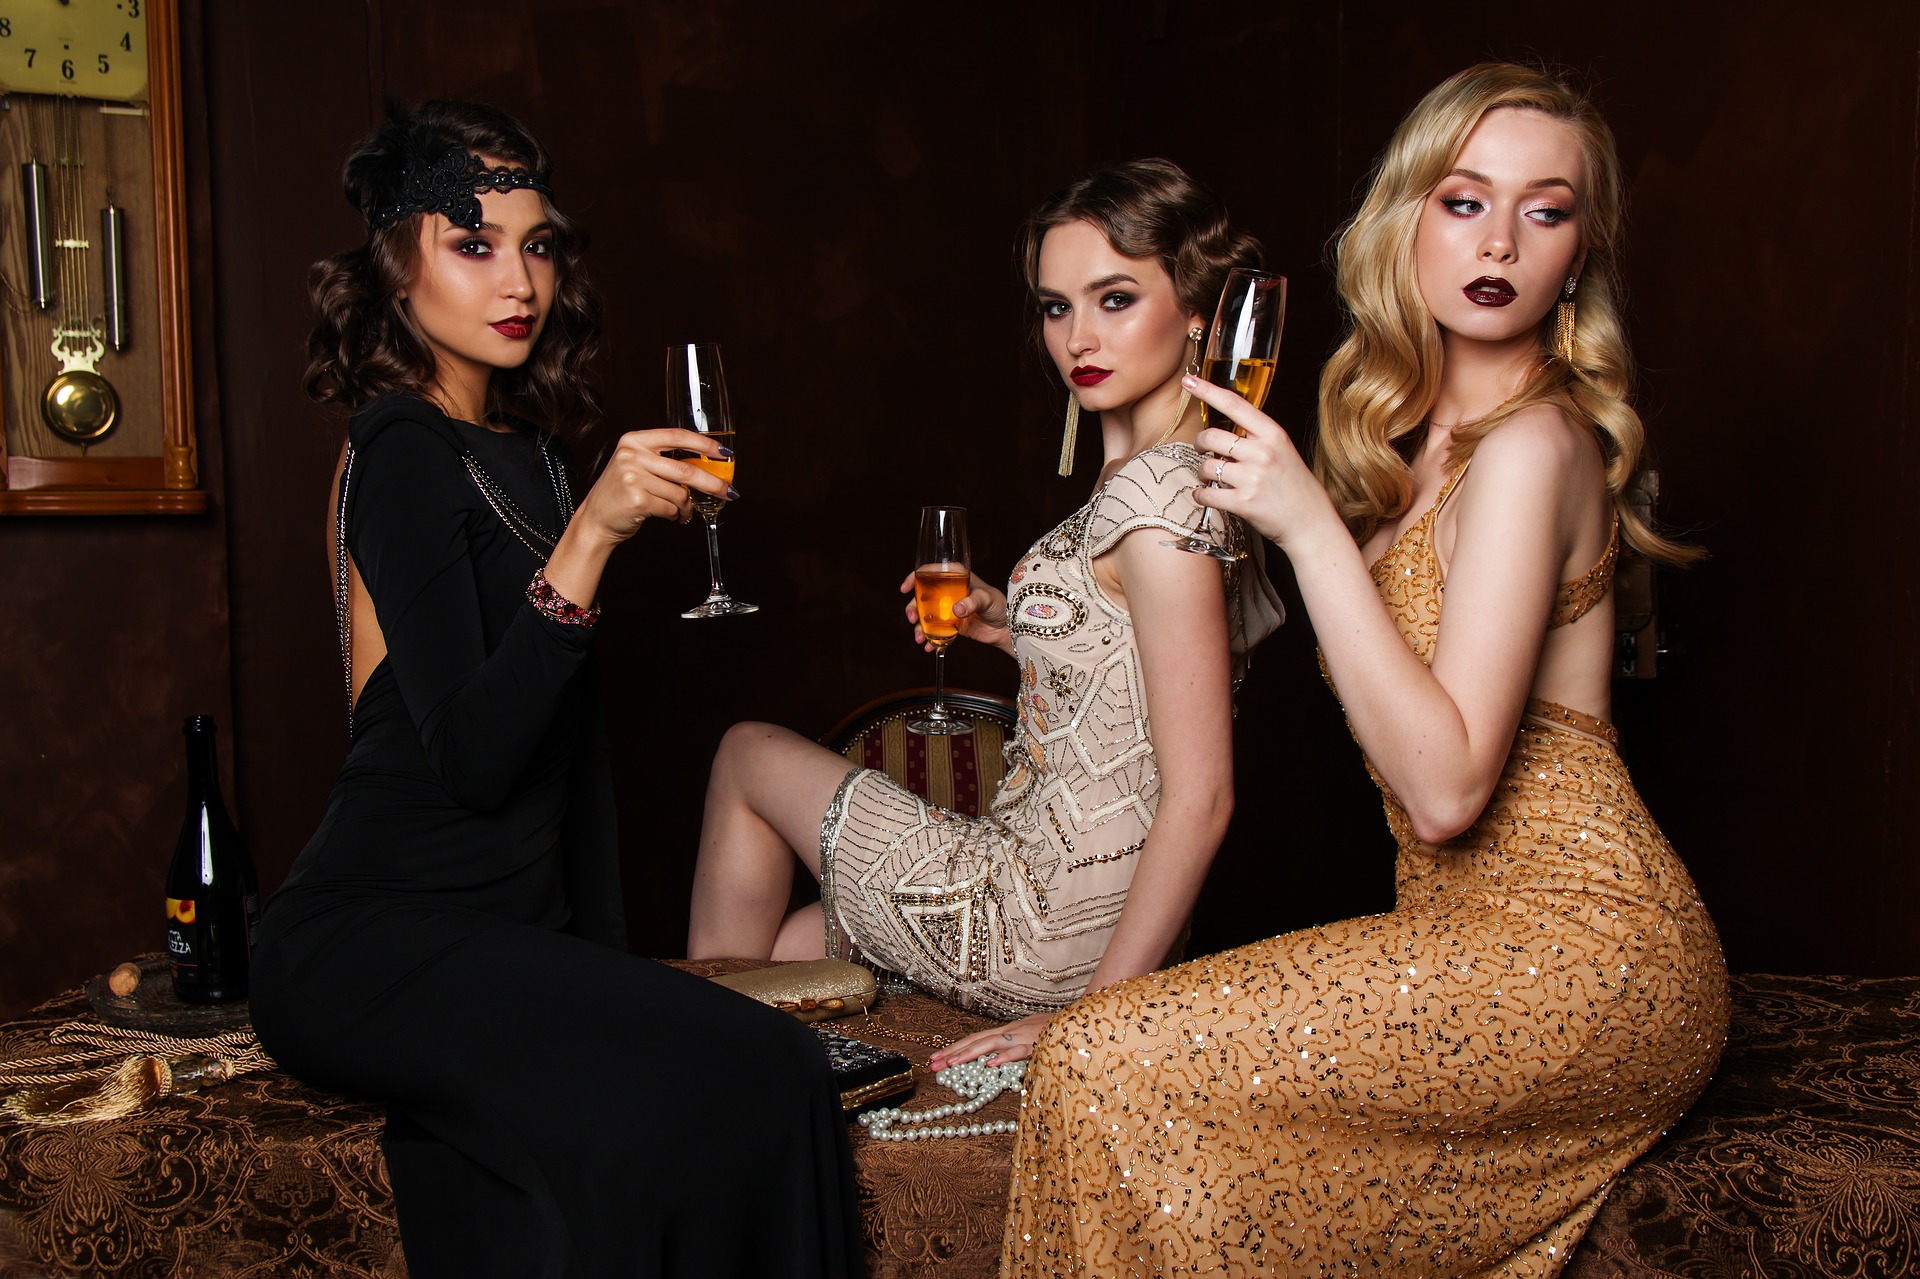 Ce sont trois femmes très apprêtées en robe de soirée qui boit une coupe de champagne.